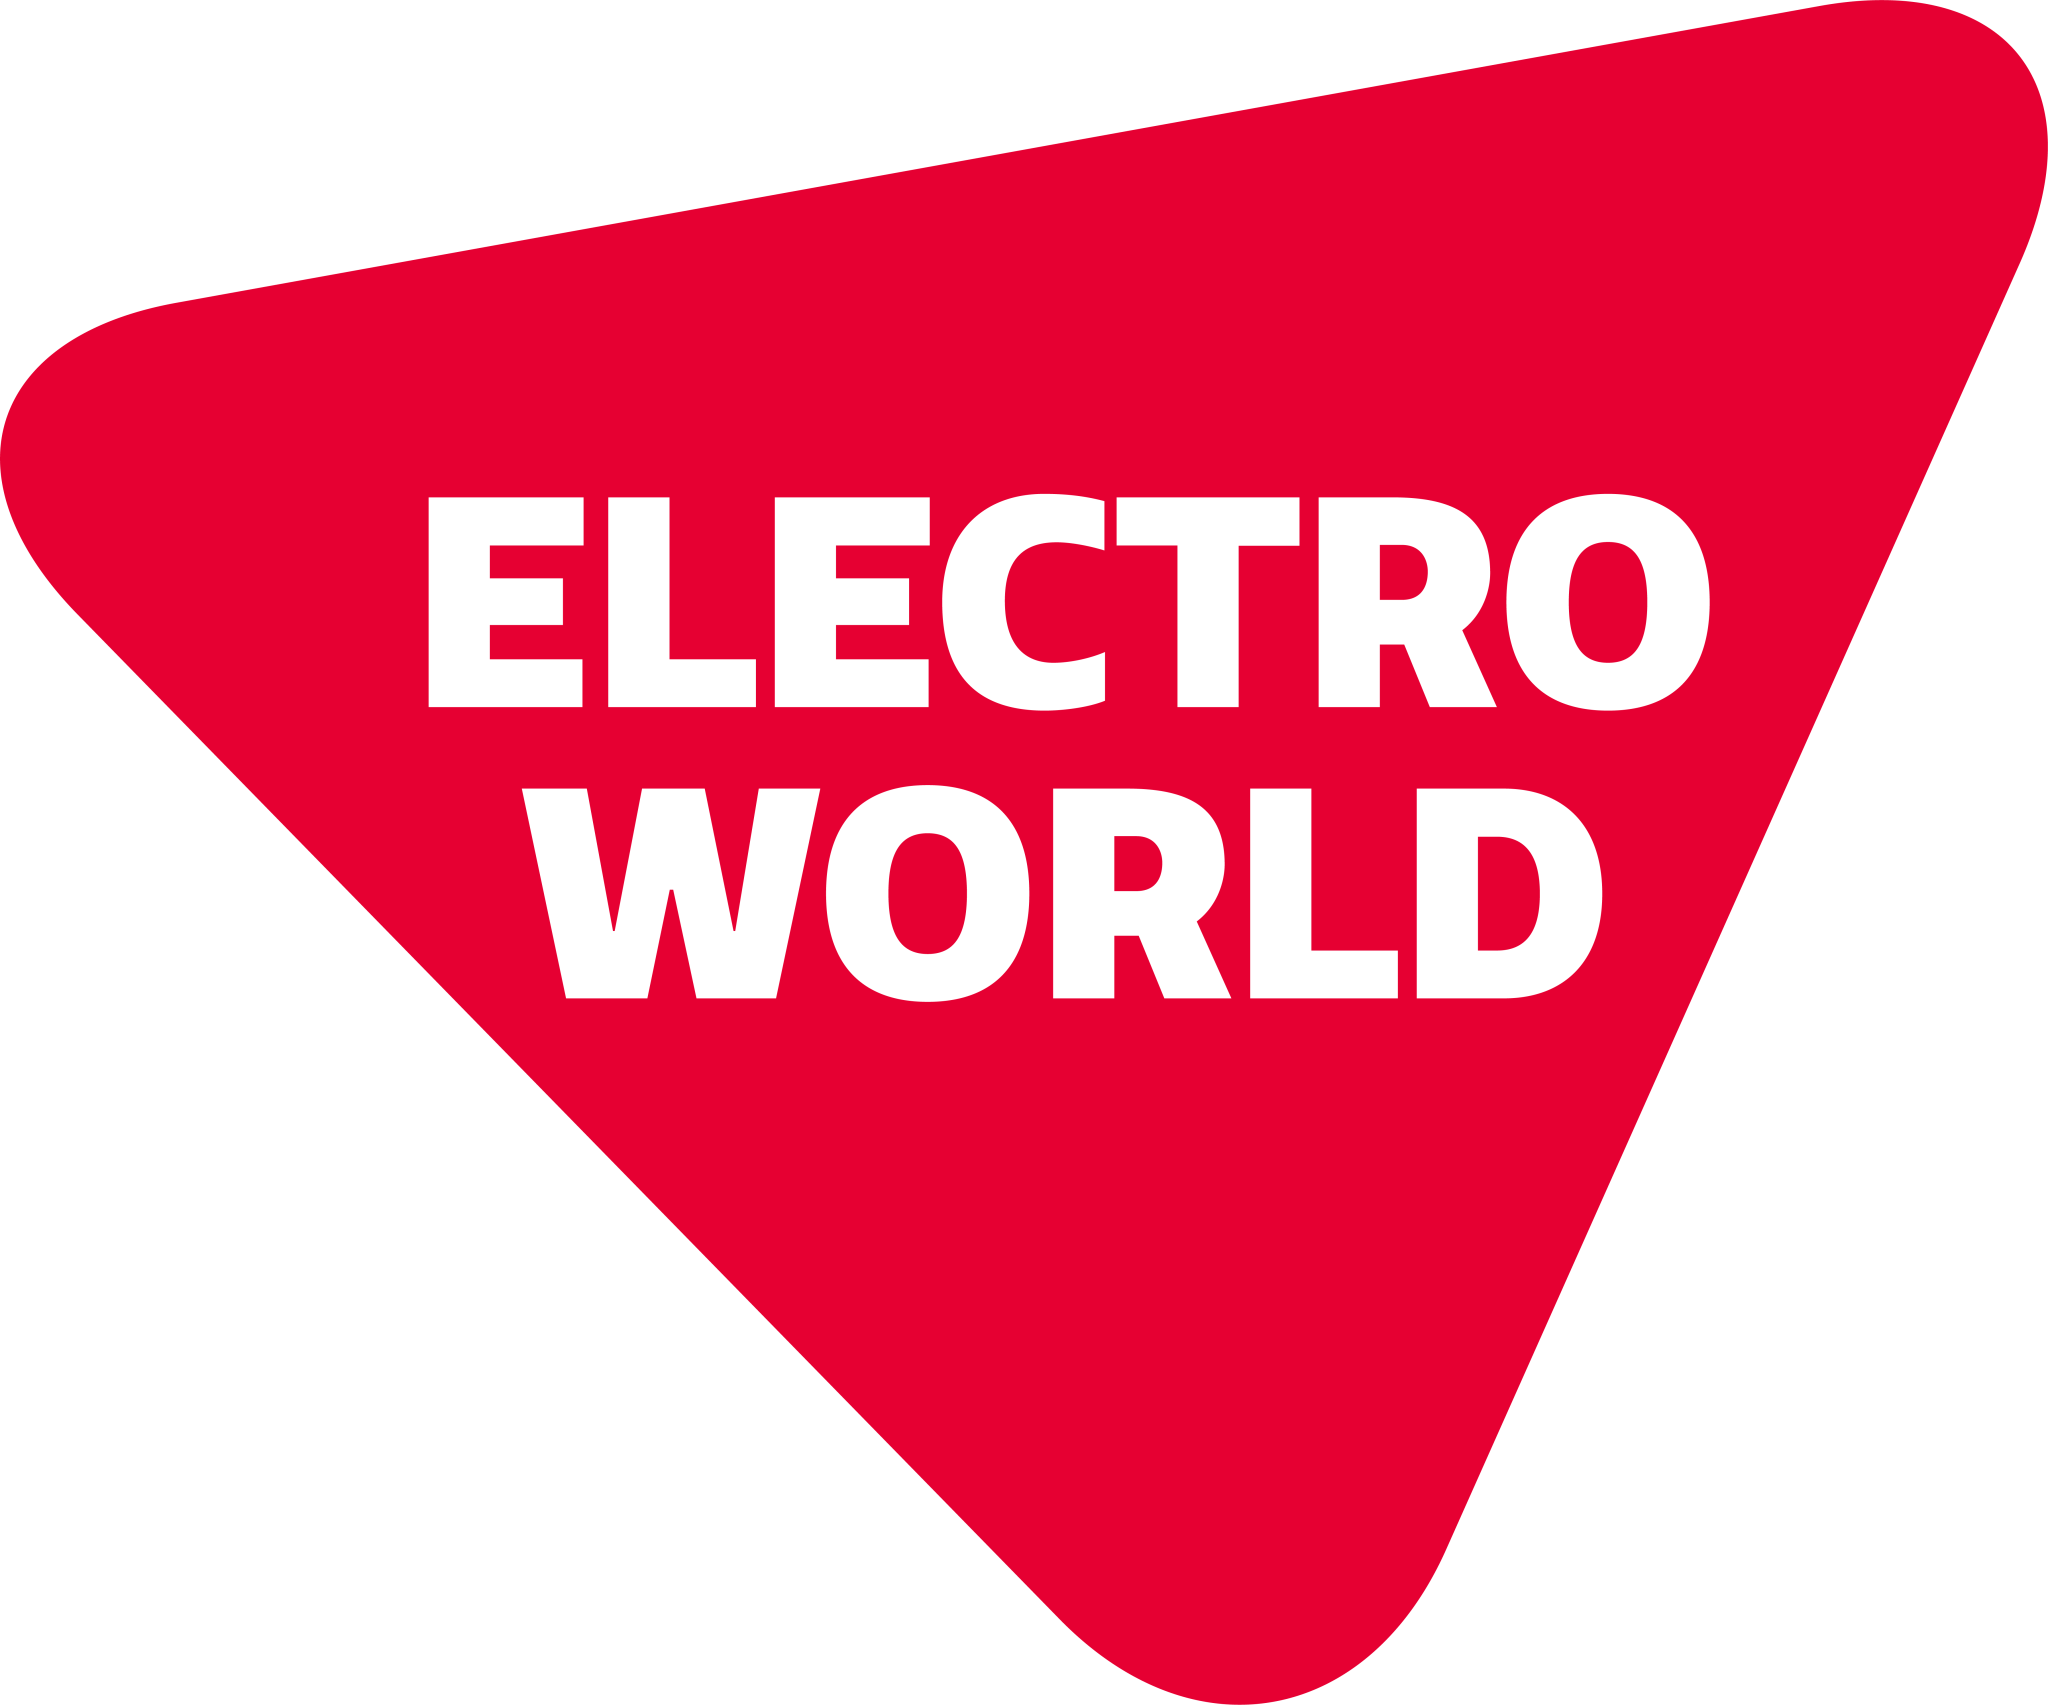 Electro world logo